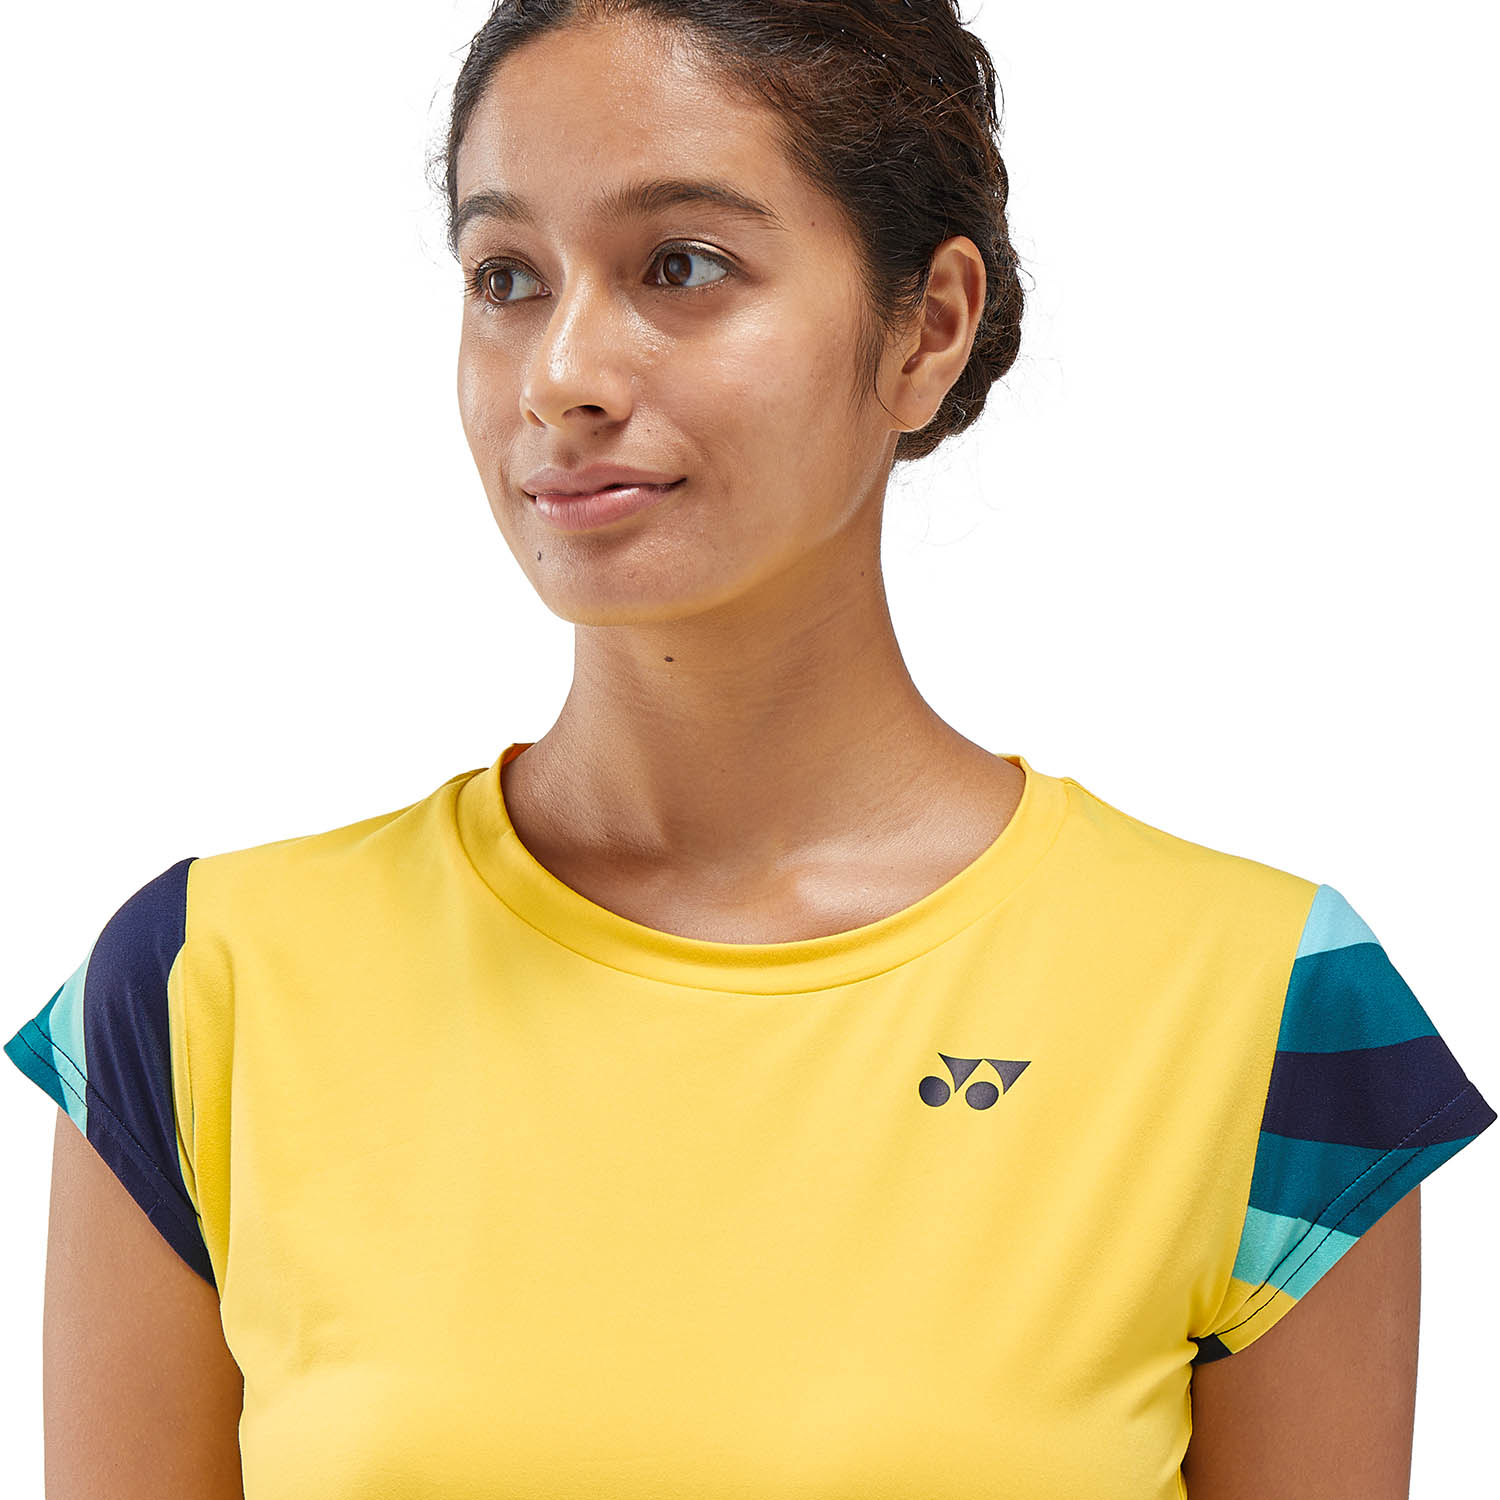 Yonex Melbourne T-Shirt - Soft Yellow